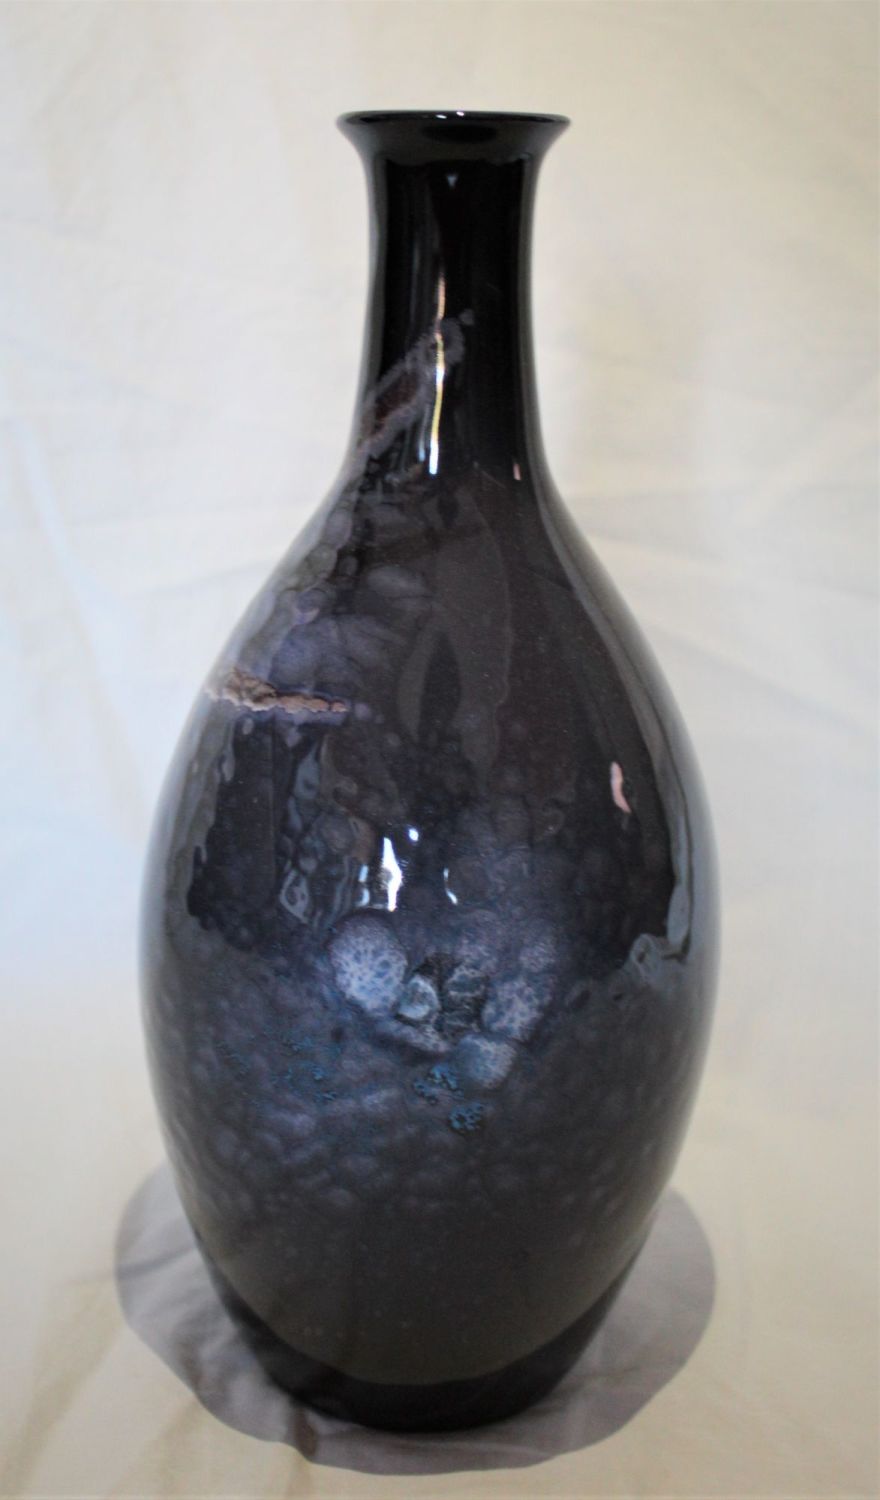 26cm Bottle Vase - Celestial design